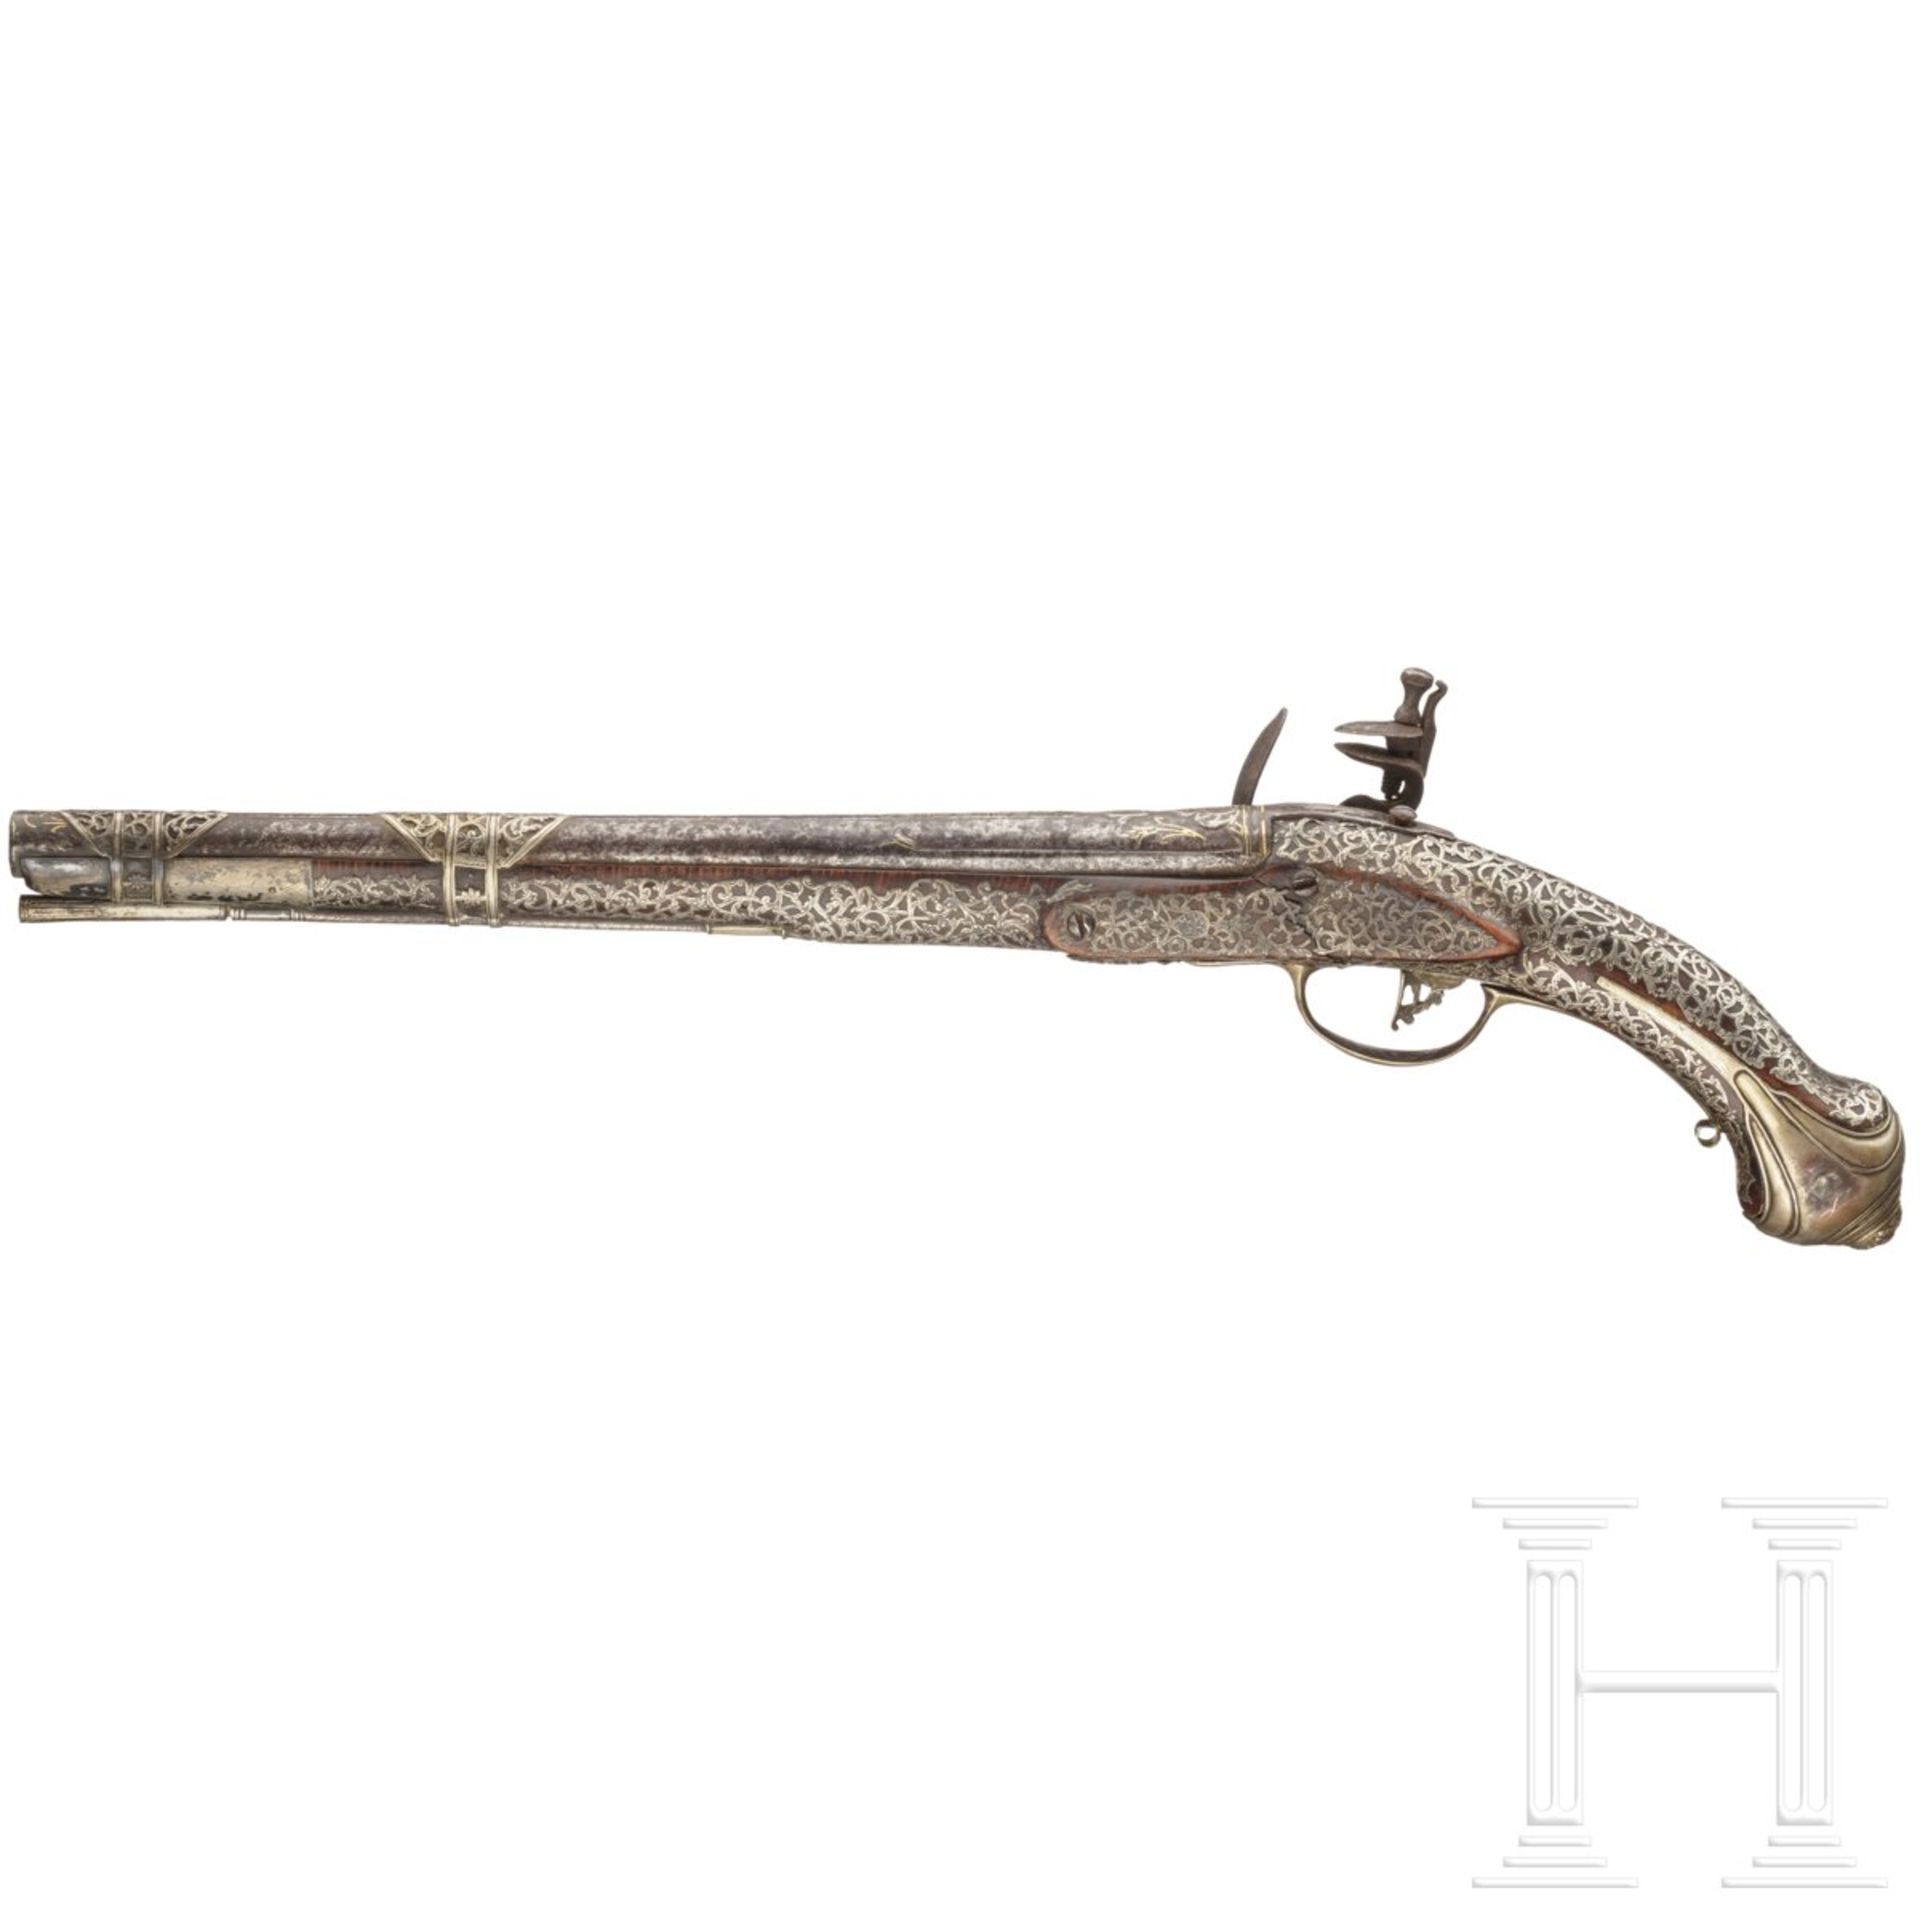 Silbermontierte Steinschlosspistole, osmanisch, 18. Jhdt.Glatter Lauf im Kaliber 14 mm, im - Bild 2 aus 6